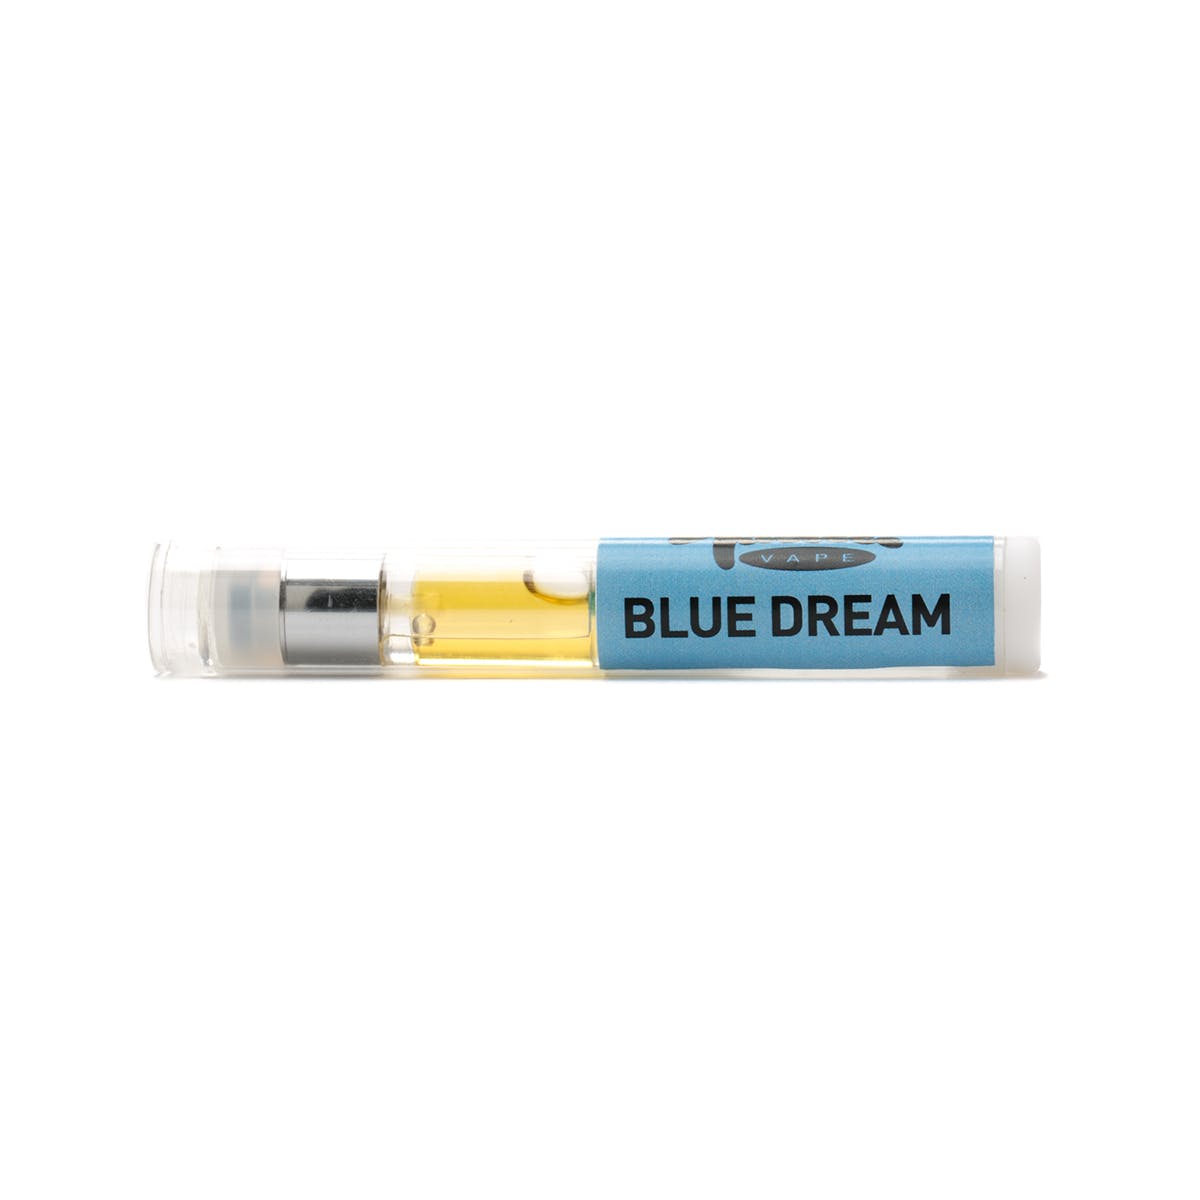 marijuana-dispensaries-scooters-in-los-angeles-blue-dream-tasteee-cartridge